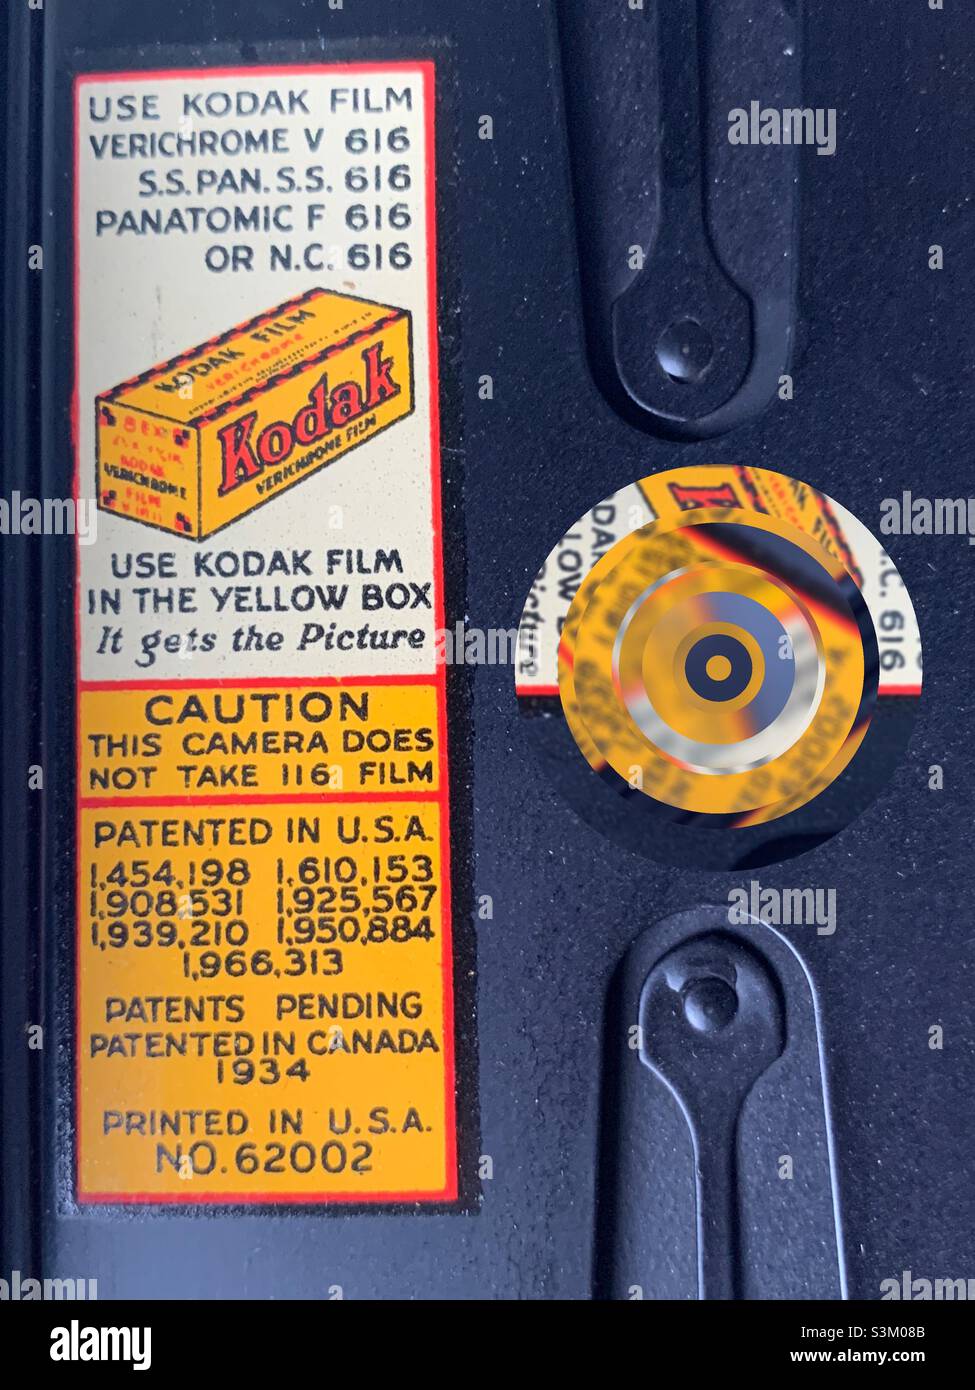 Etichetta Kodak (circa 1934) all'interno di questa fotocamera antica. Il cerchio prismatico e astratto sulla destra è stato aggiunto digitalmente e potrebbe rappresentare l’obiettivo, l’apertura, l’otturatore o l’anello di messa a fuoco di una telecamera. Foto Stock